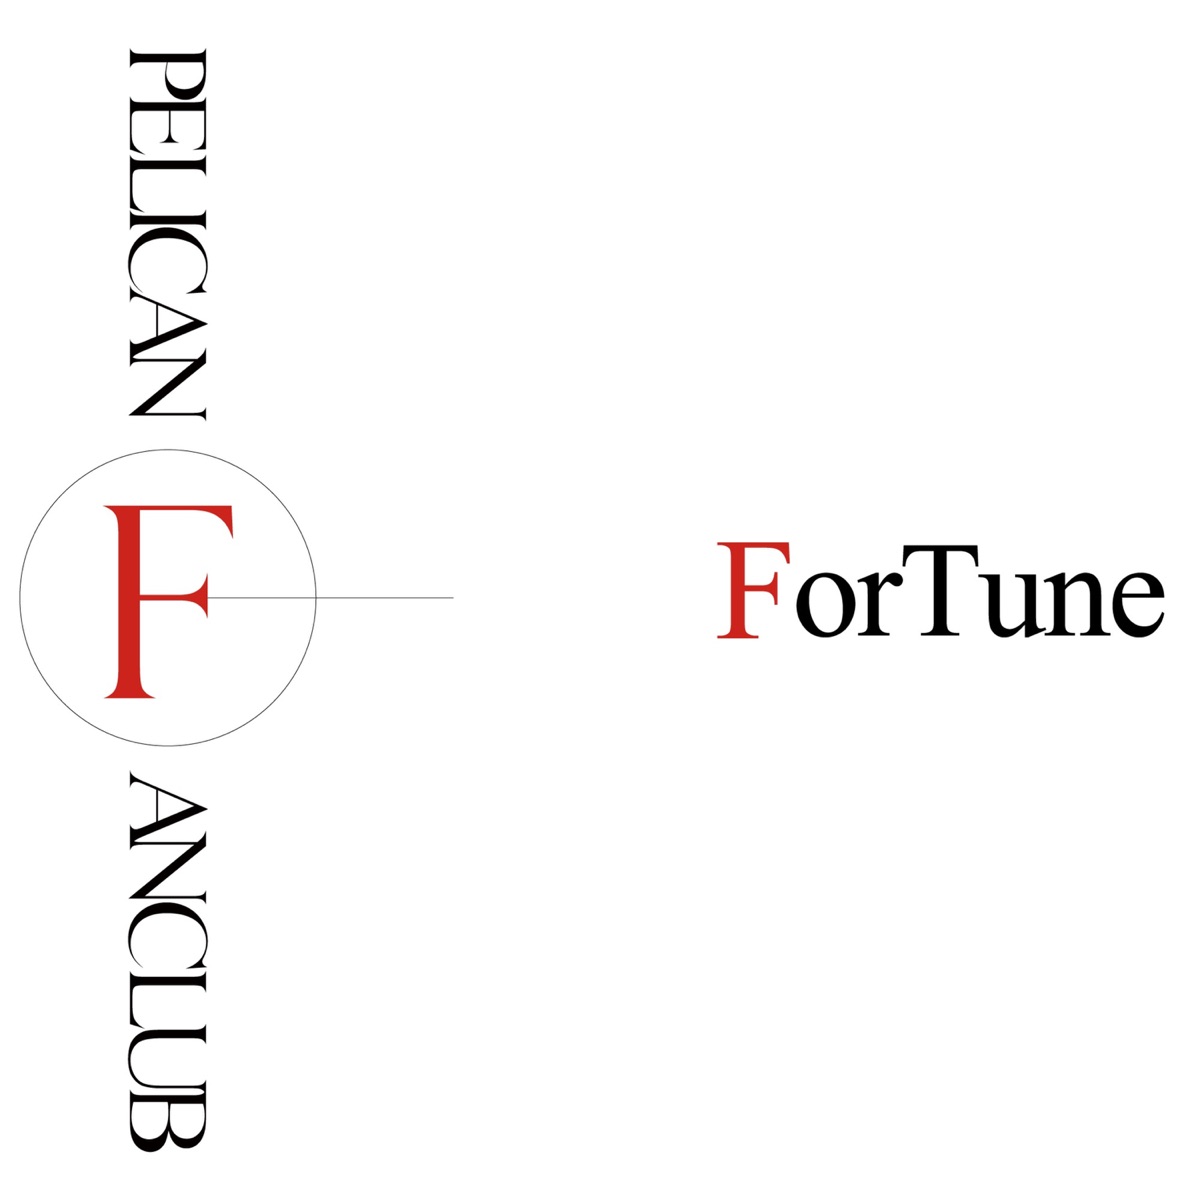 『PELICAN FANCLUB - ForTune』収録の『ForTune』ジャケット